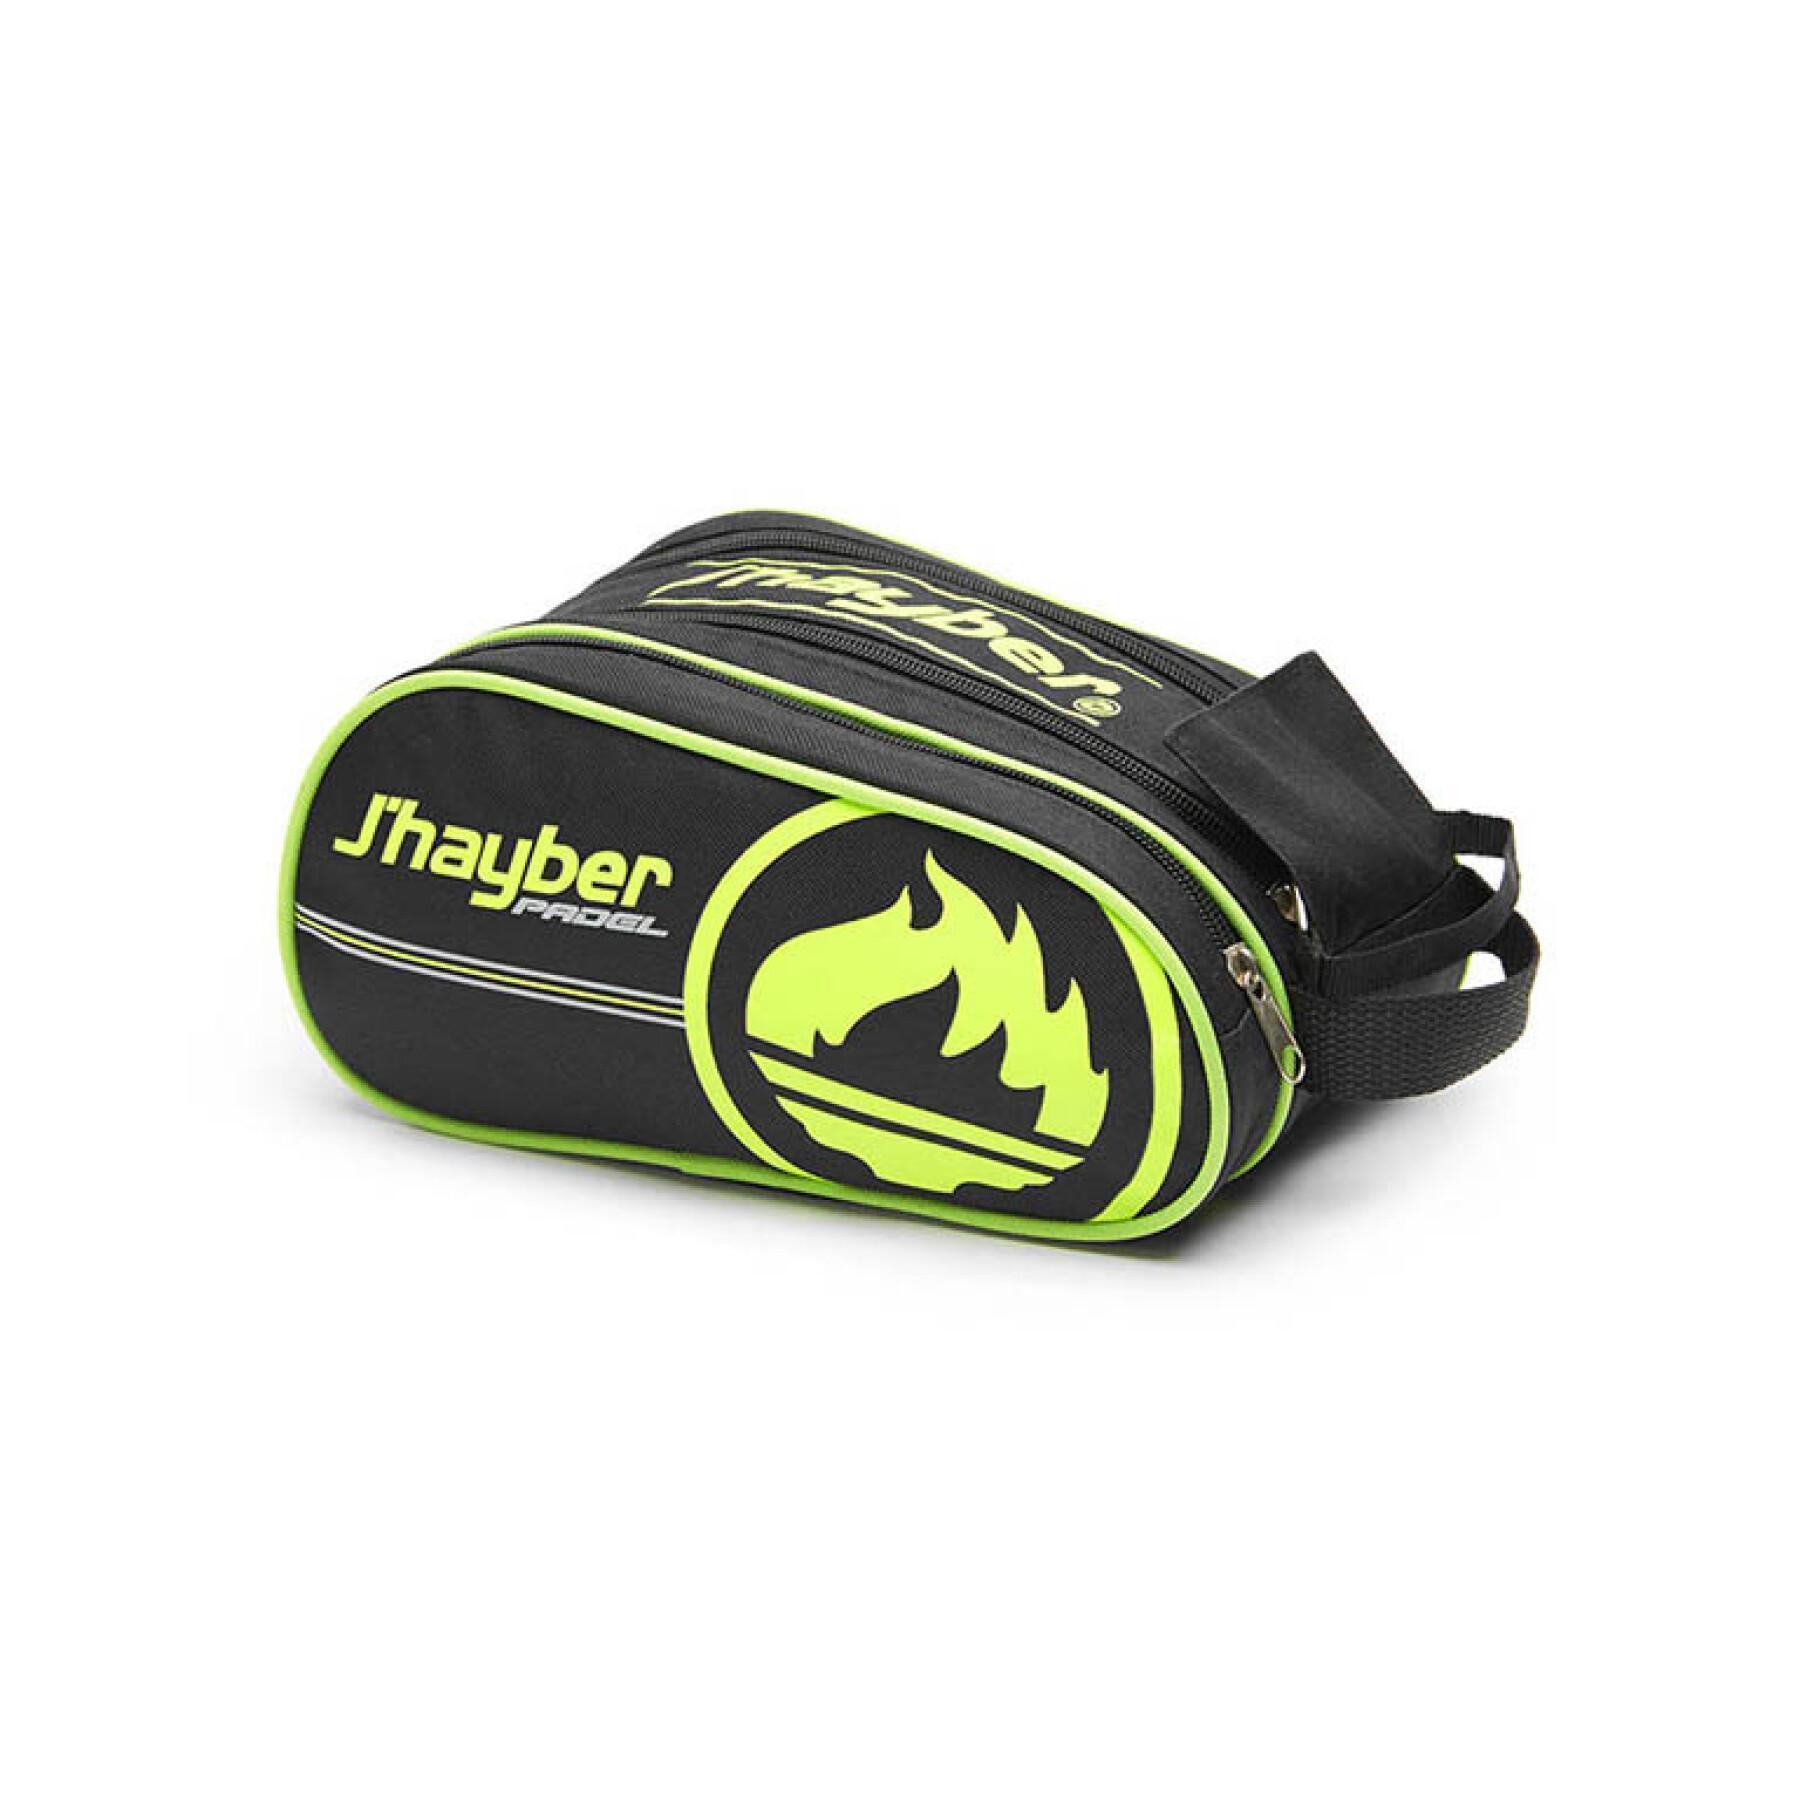 Väska för padelracket med logotyp J'hayber